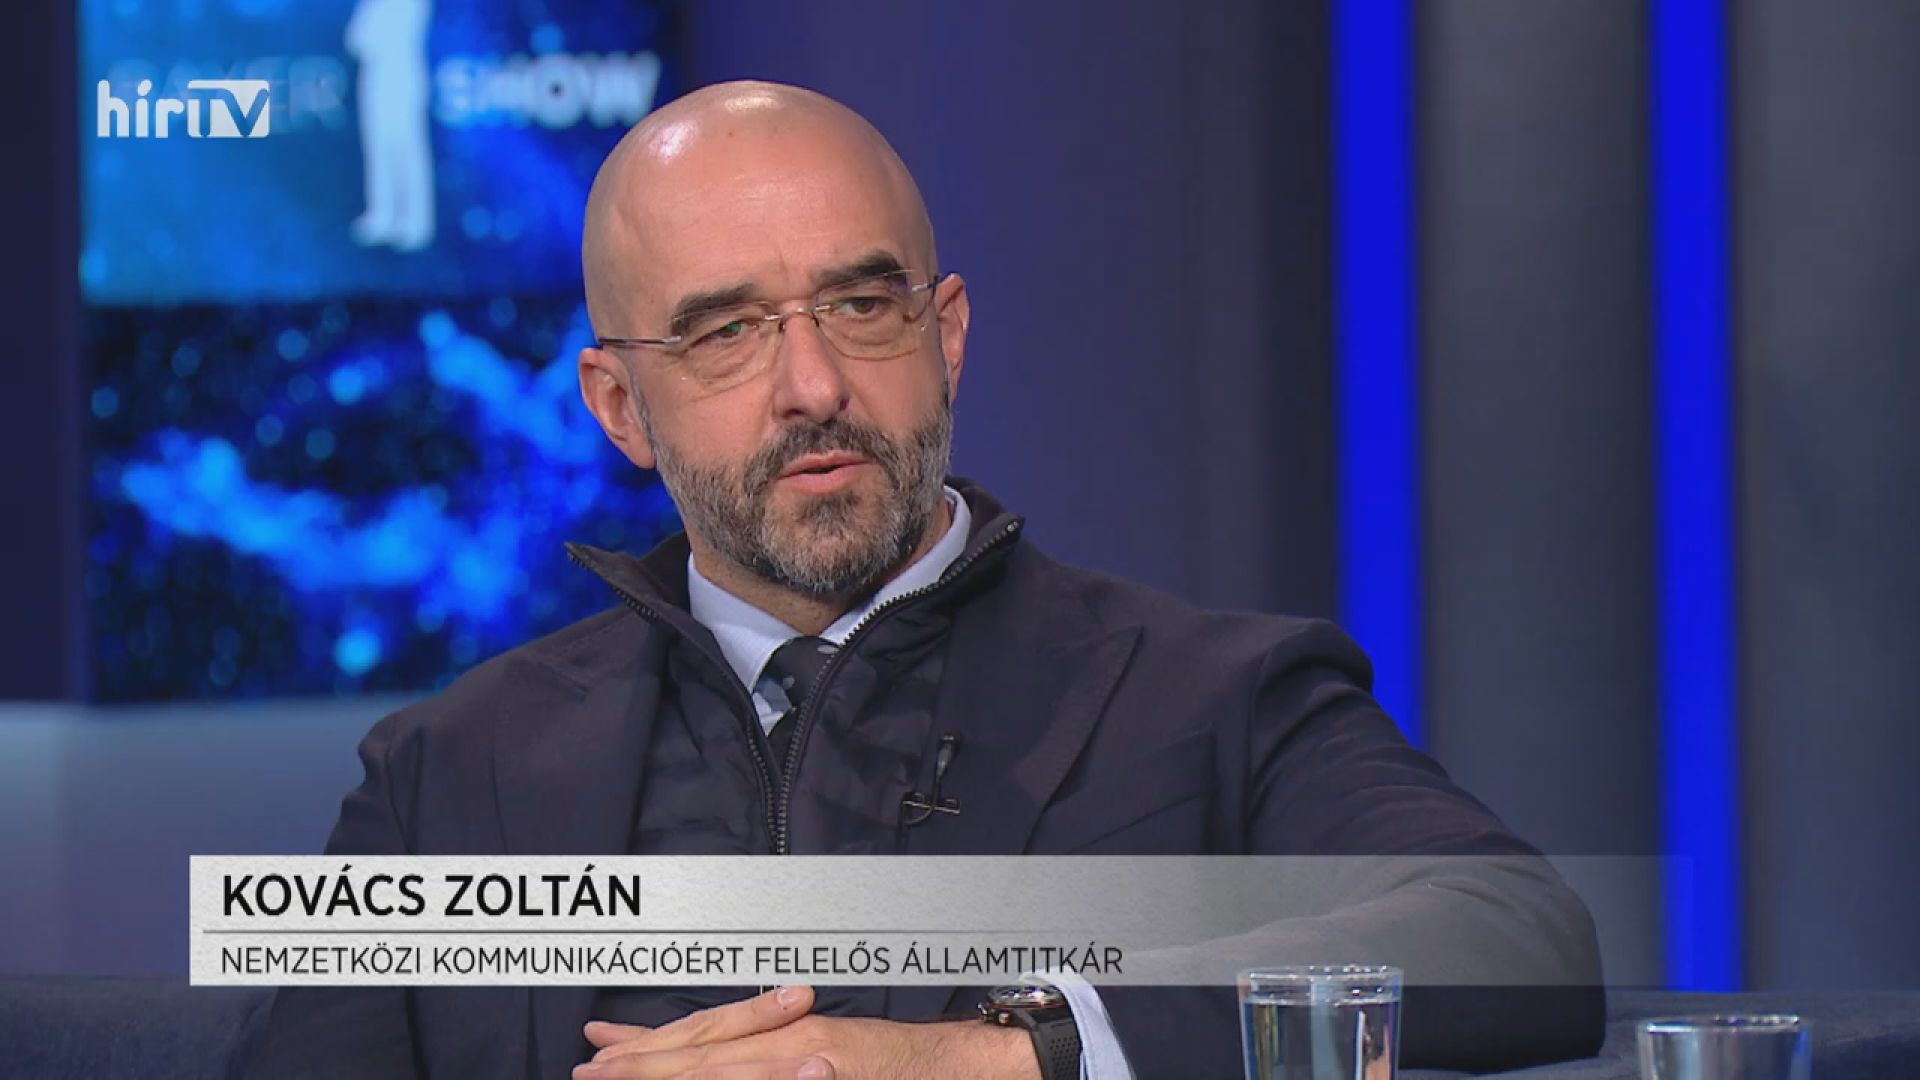 Kovács Zoltán: Magyarország következetesen egy nemzeti érdekérvényesítő politikát folytat